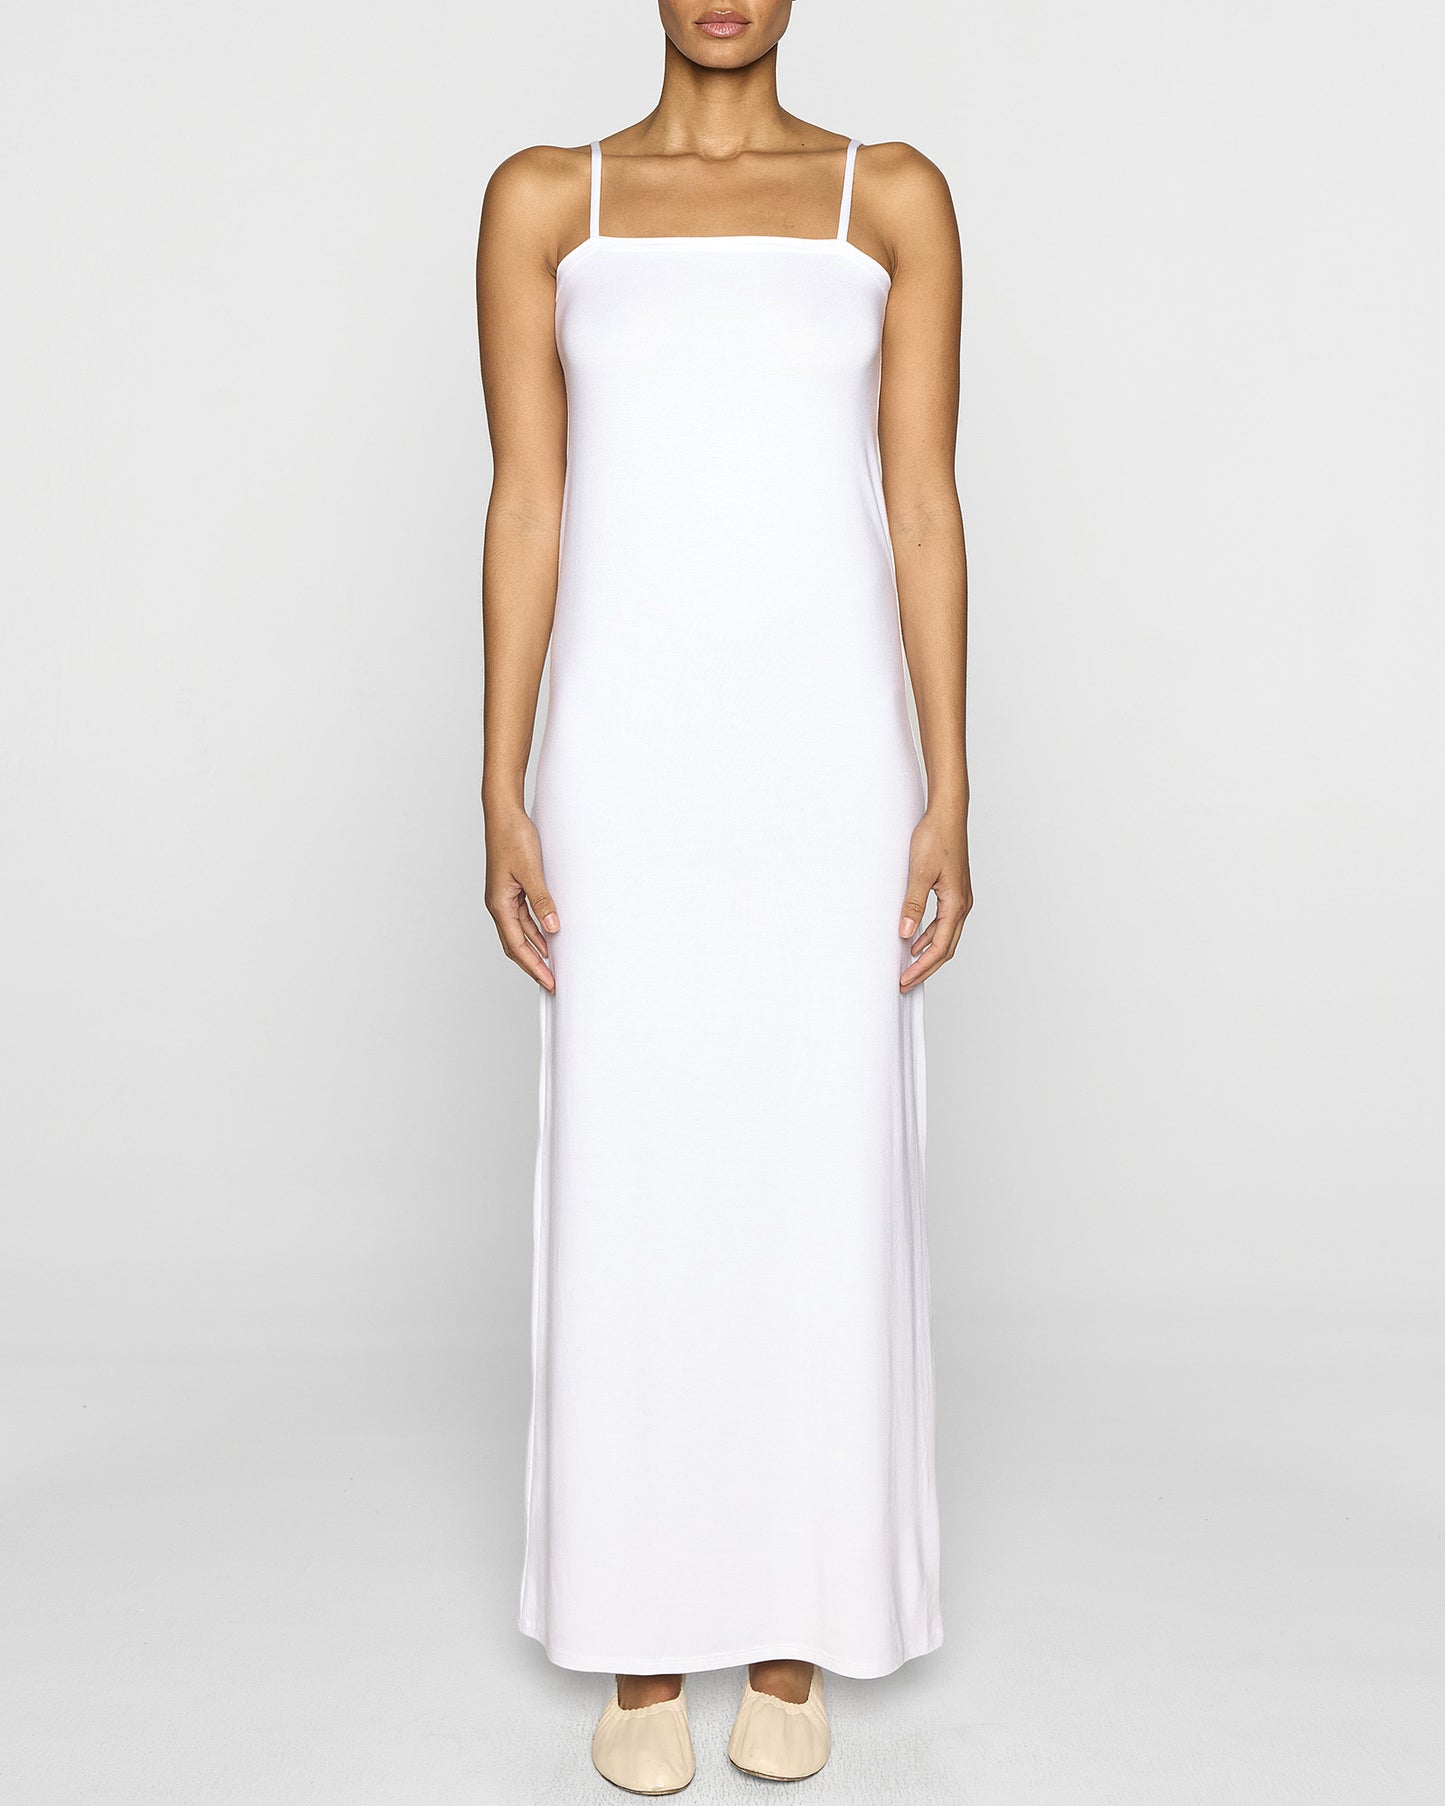 White | The Slip Dress Lite